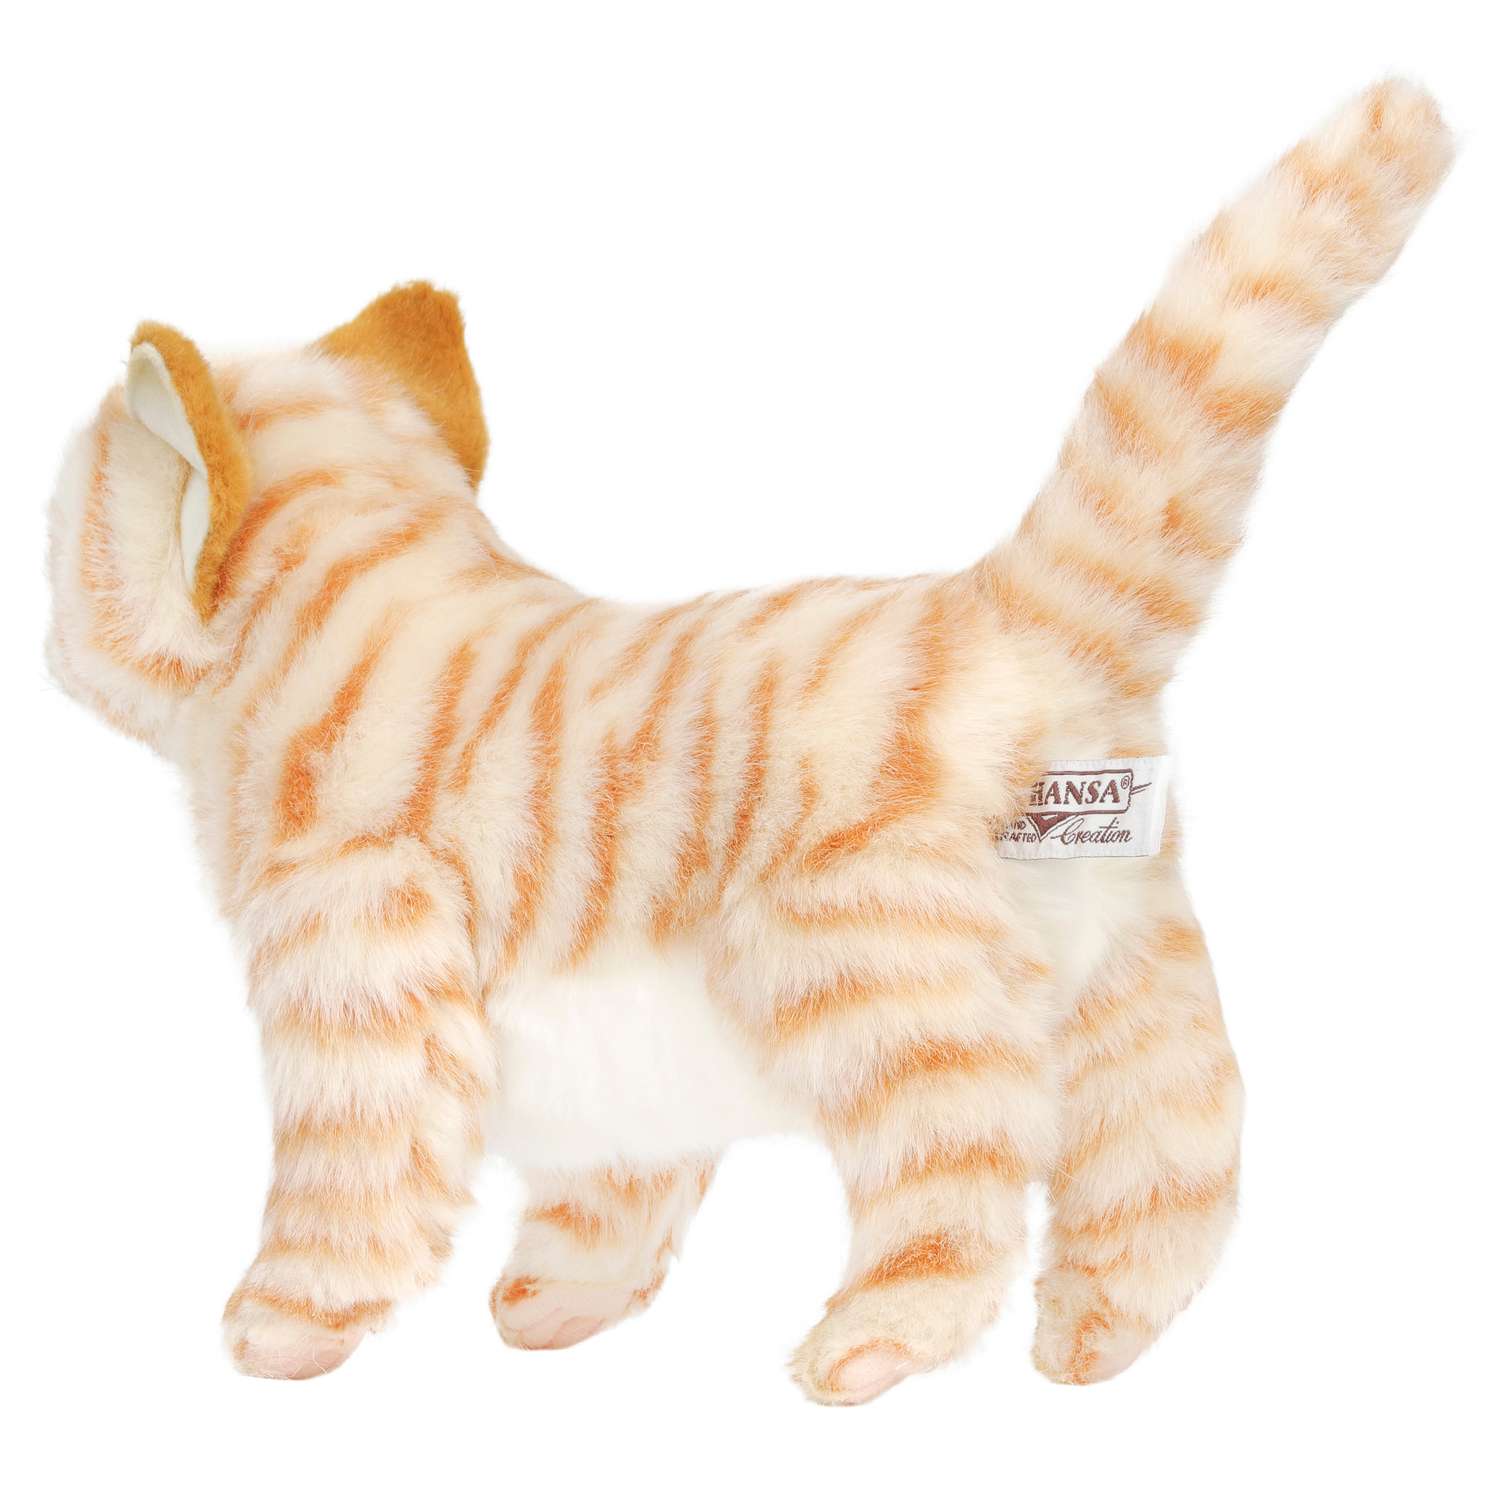 Реалистичная мягкая игрушка Hansa Котёнок стоящий рыжий 30 см - фото 9